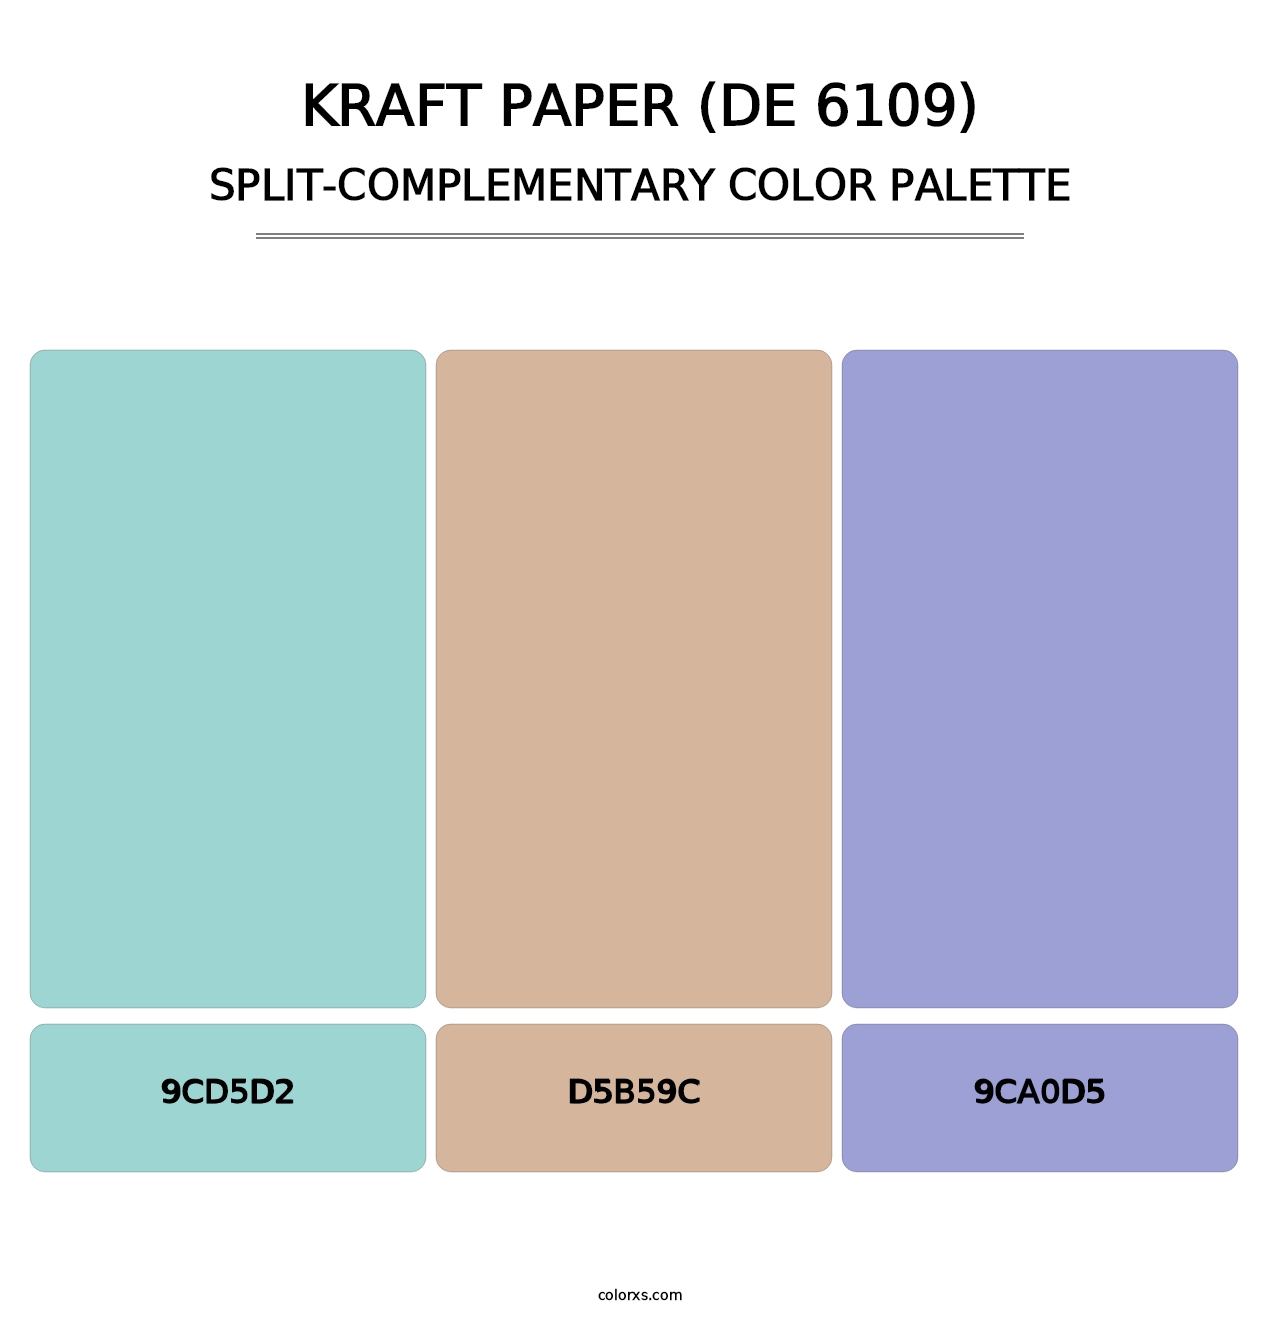 Kraft Paper (DE 6109) - Split-Complementary Color Palette